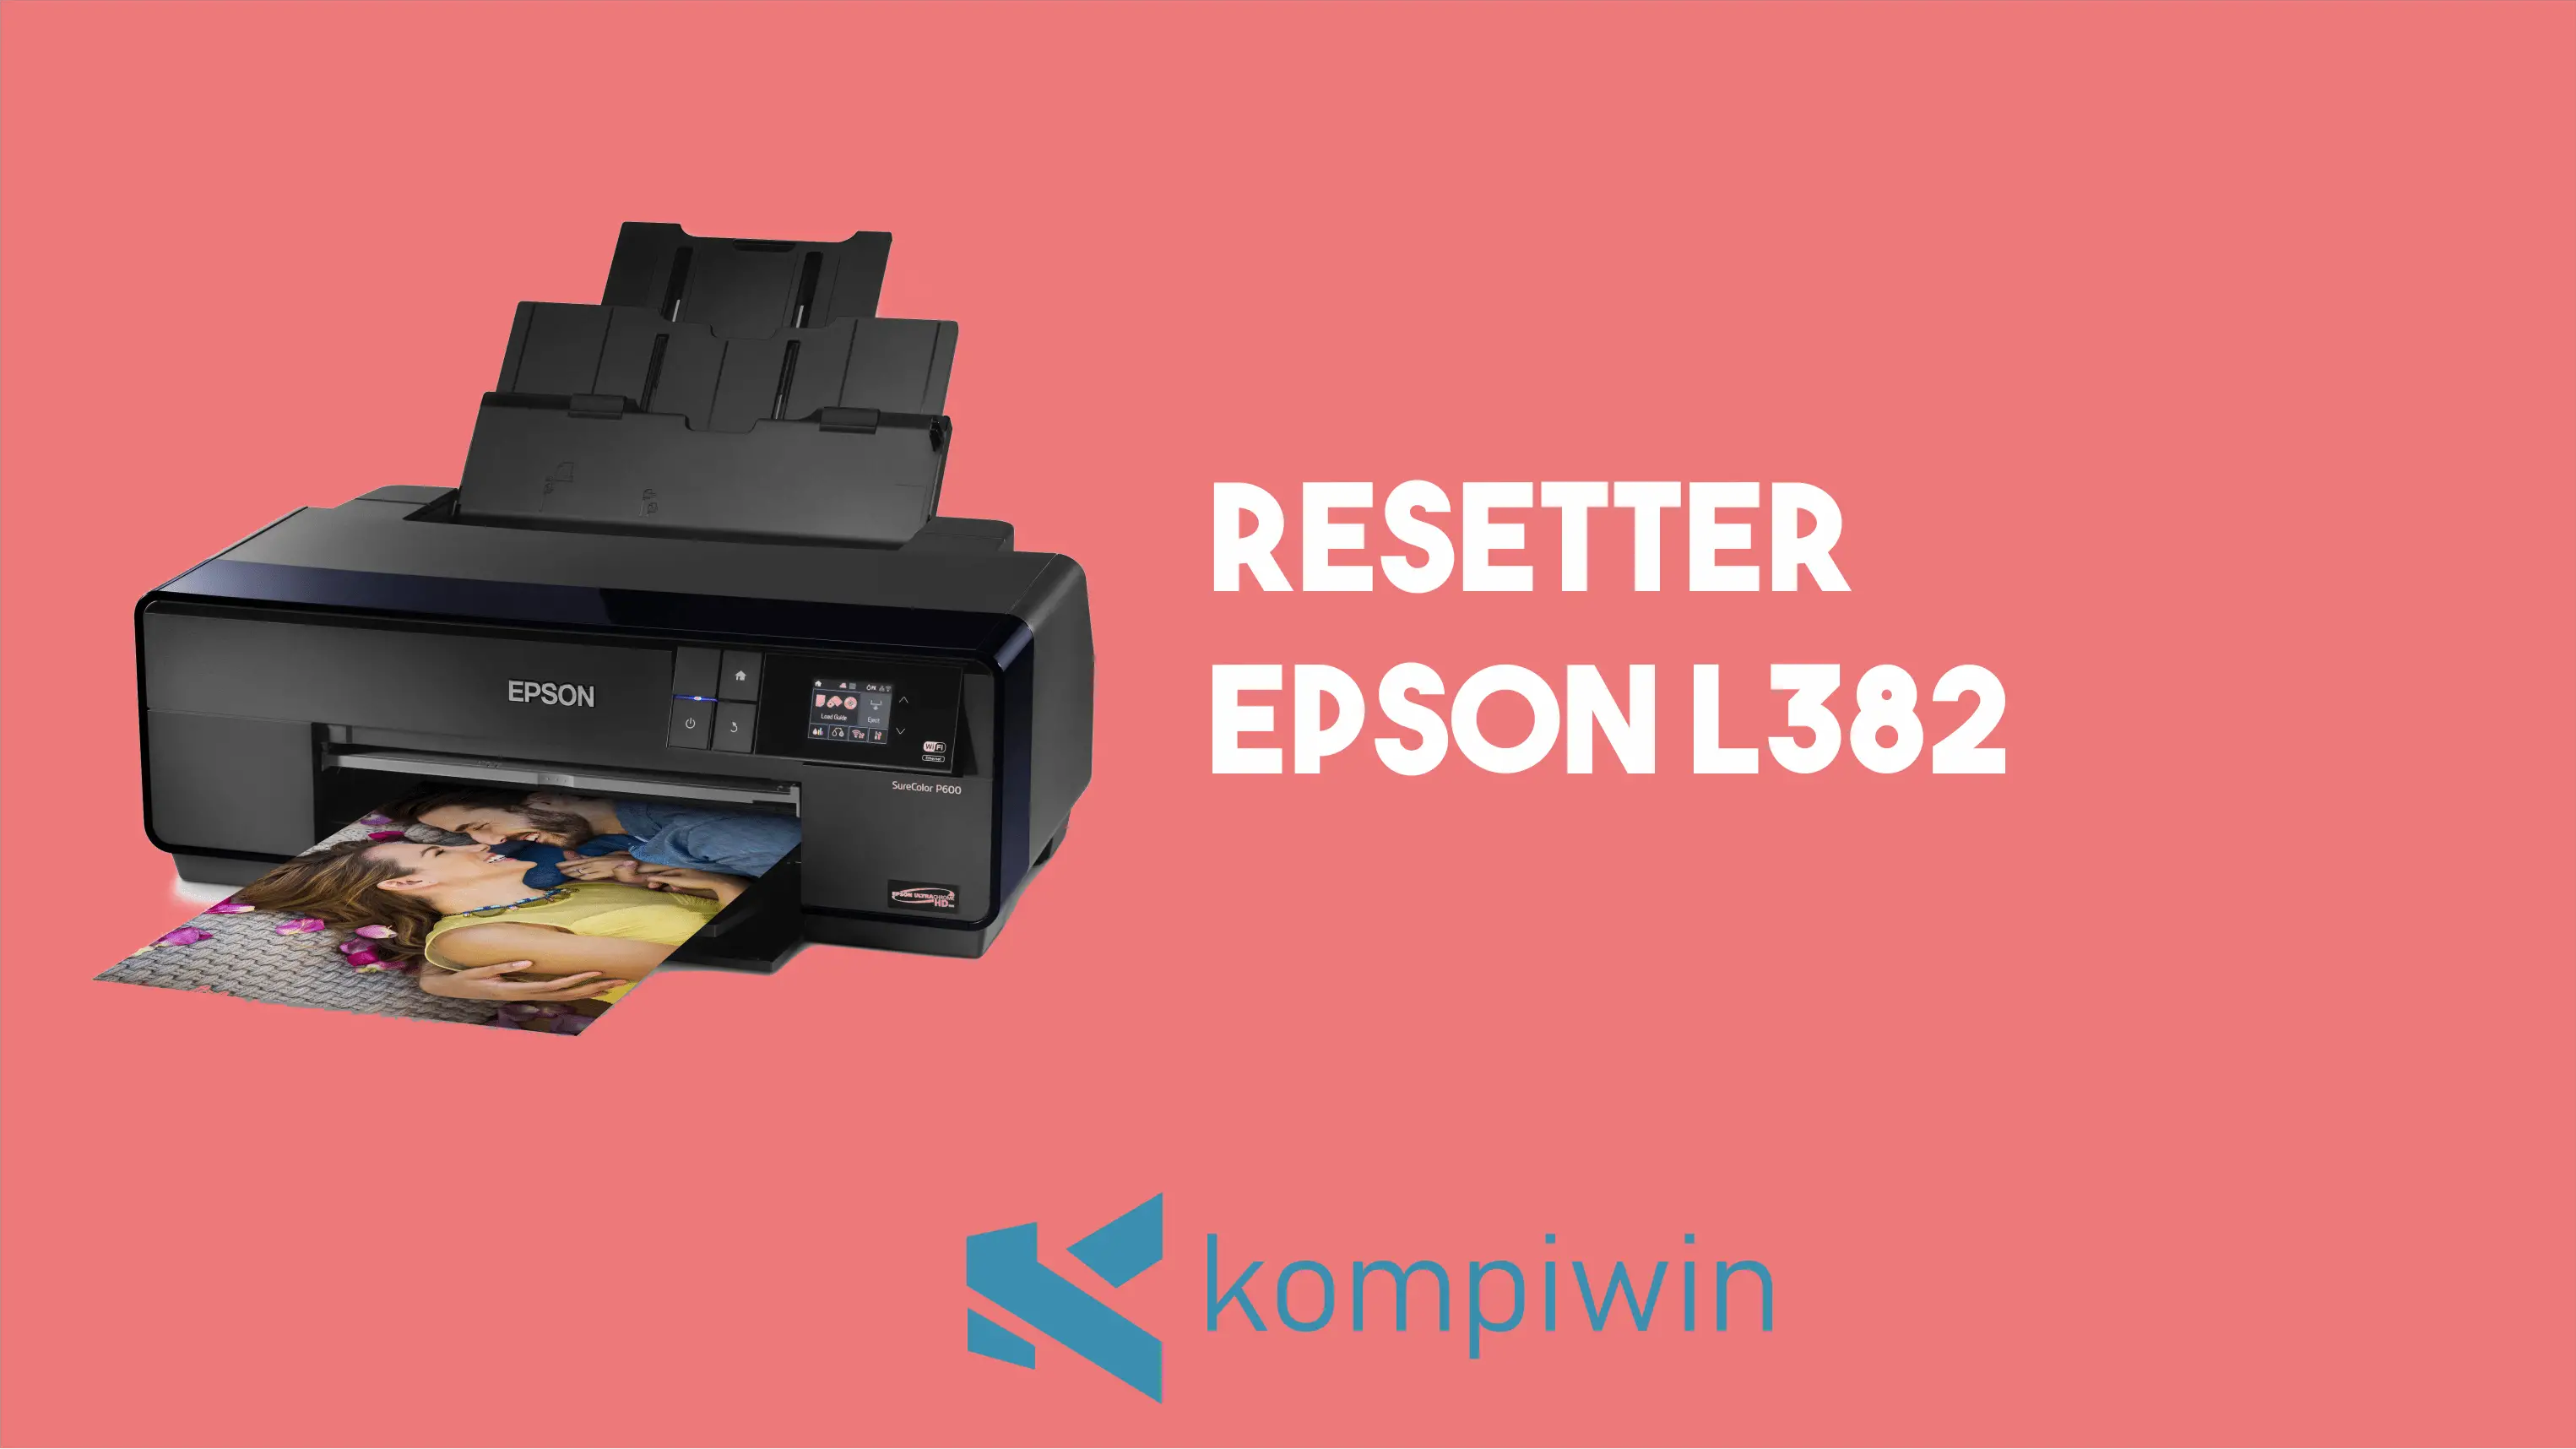 Resetter Epson L382